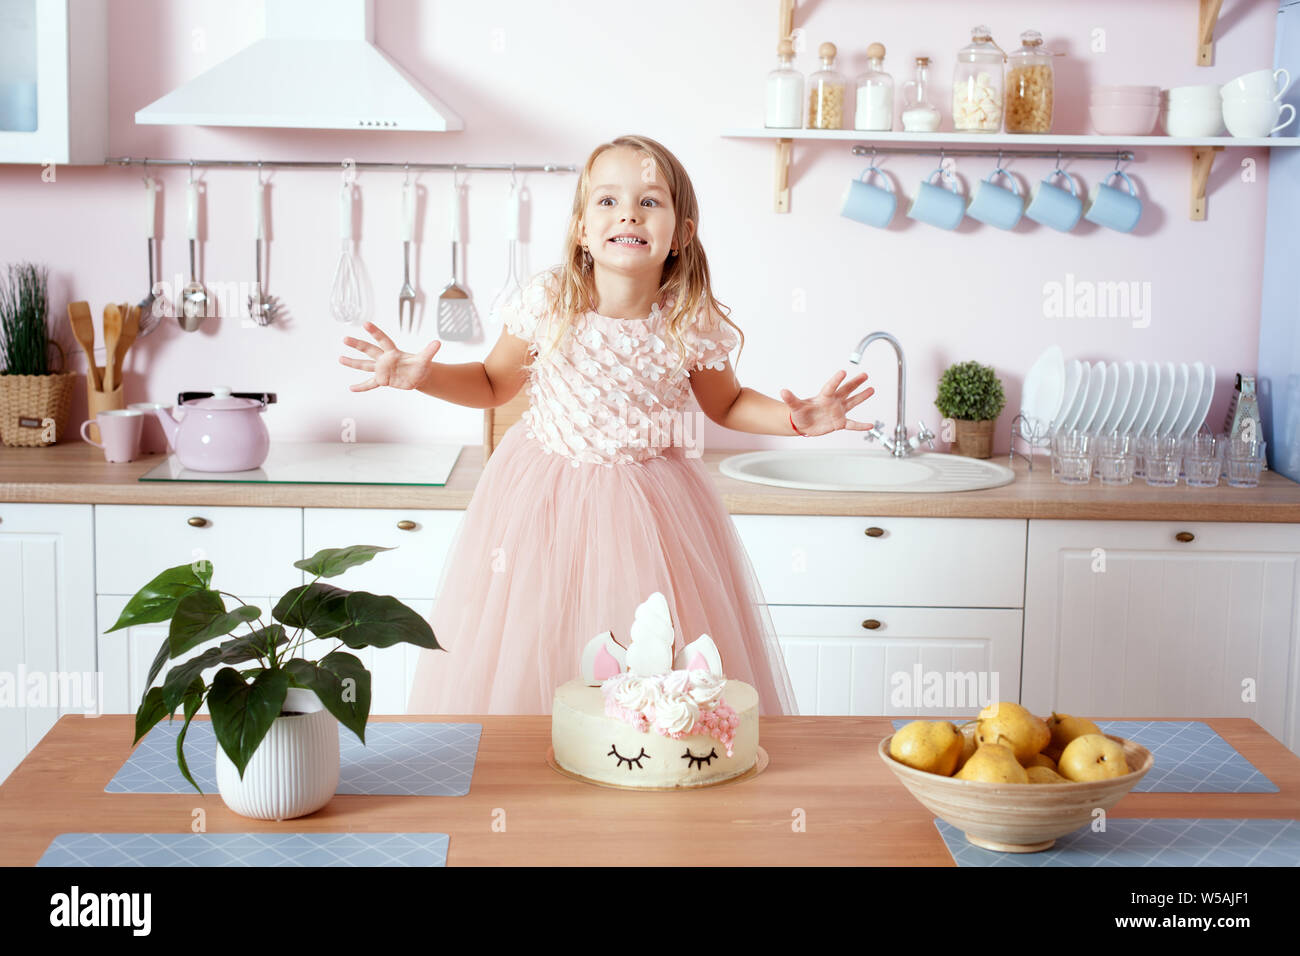 Kleines Mädchen in einem schönen Kleid in der Küche herum. Es ist wie ein Kuchen auf dem Tisch. Stockfoto